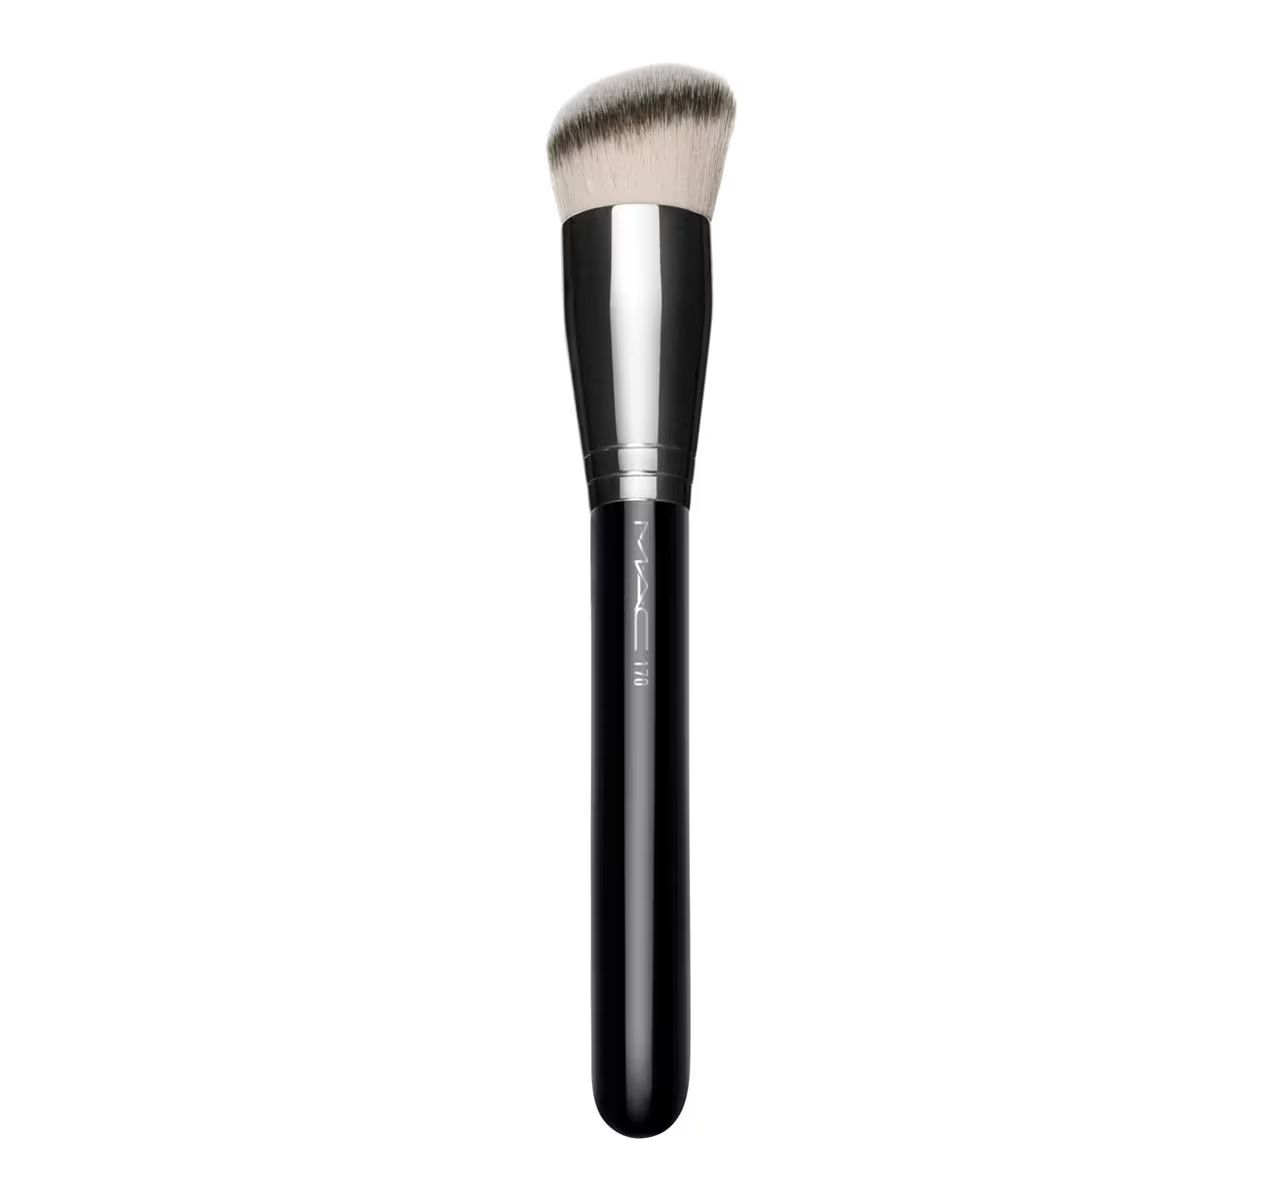 MAC 170 Brush - Rounded Foundation Slant Brush | MAC Cosmetics | MAC Cosmetics - Official Site | MAC Cosmetics (US)